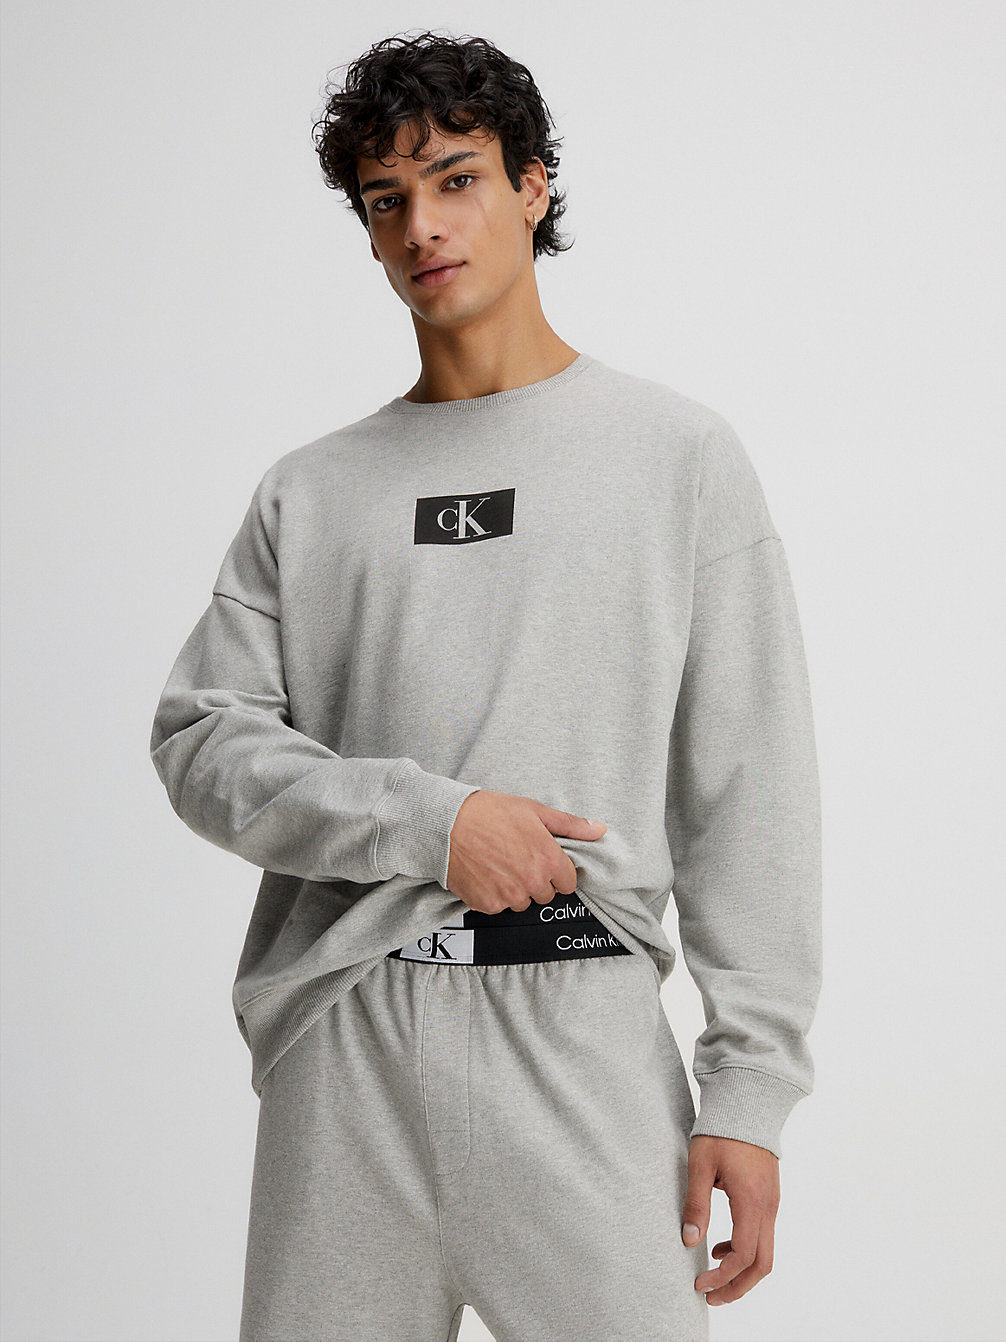 GREY HEATHER > Lounge-Sweatshirt - Ck96 > undefined men - Calvin Klein